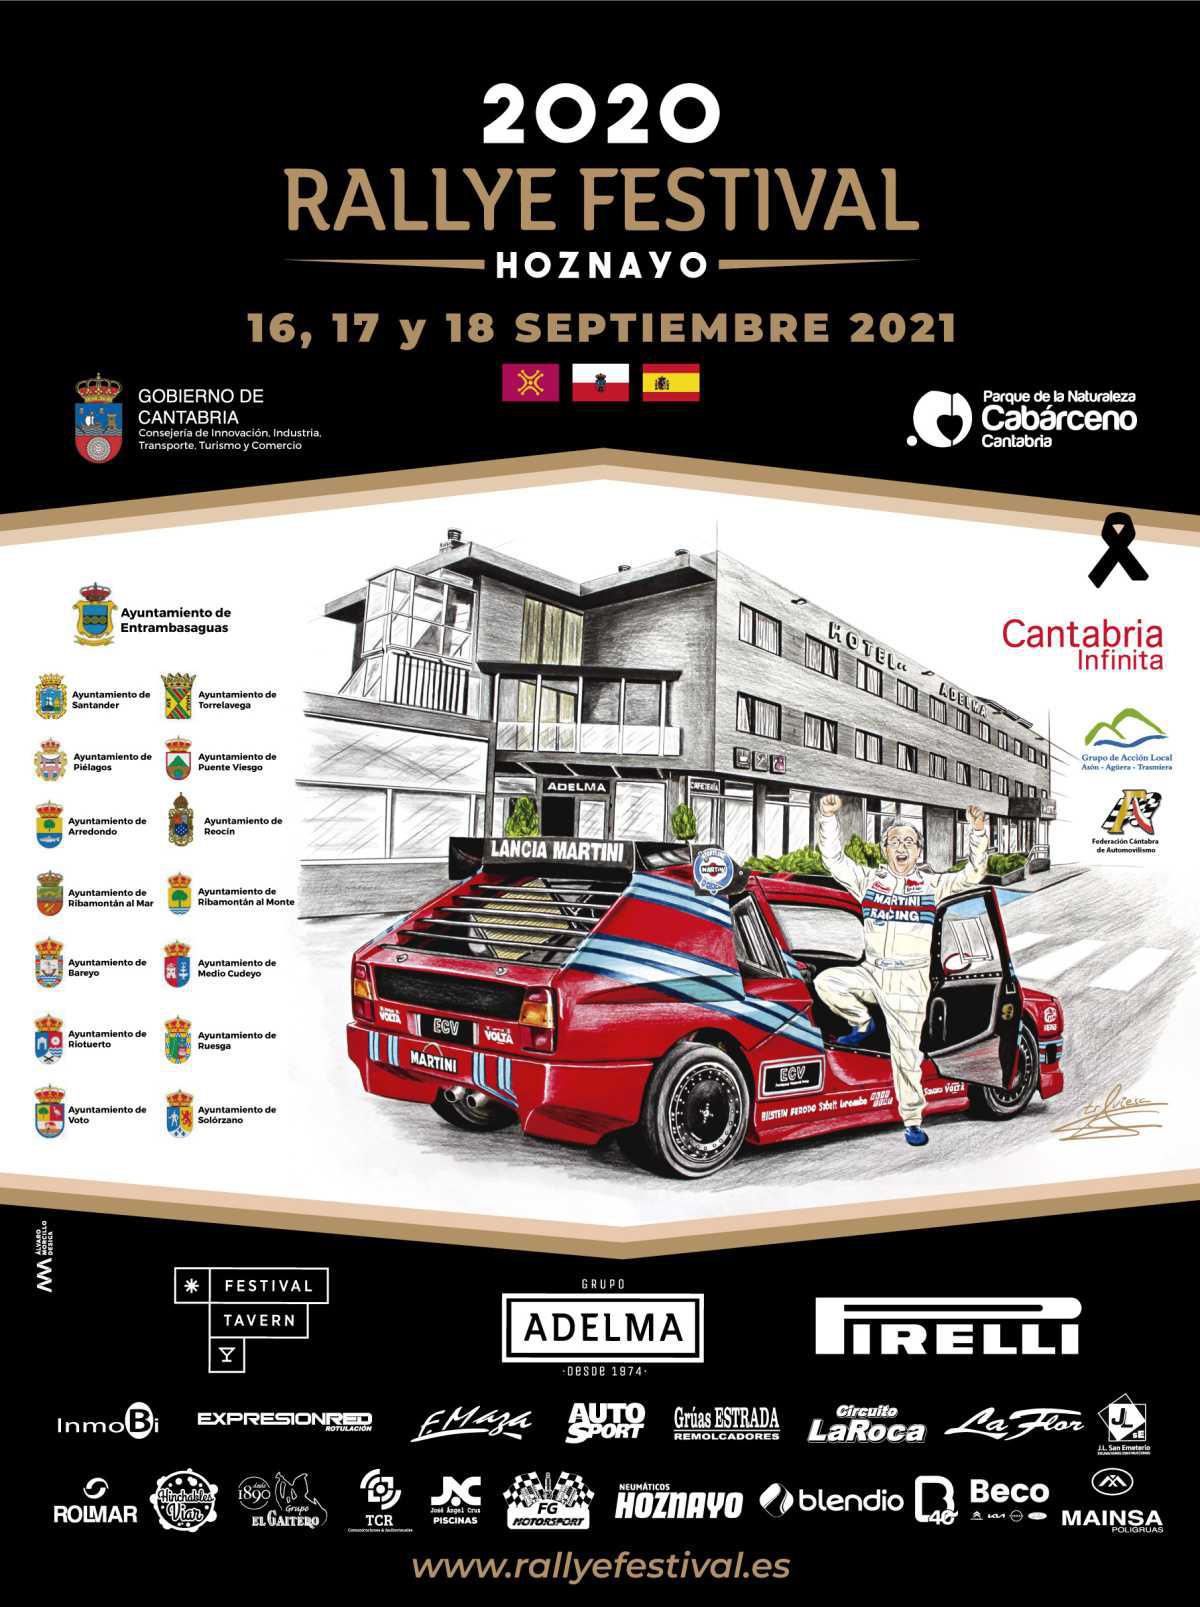 El Rallye Festival Hoznayo presenta su cartel oficial